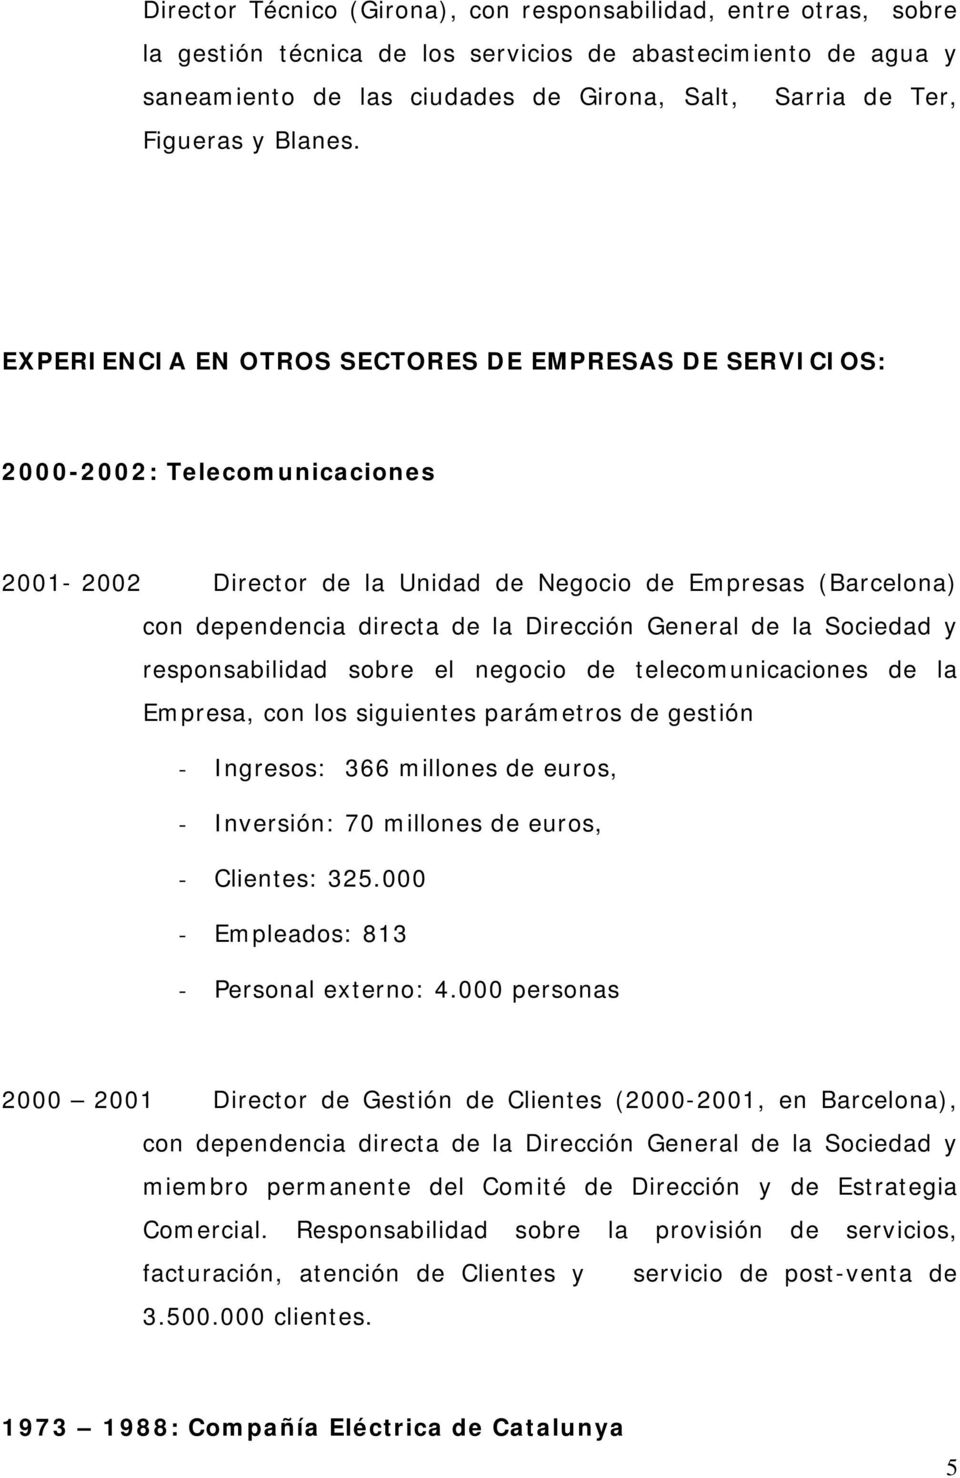 EXPERIENCIA EN OTROS SECTORES DE EMPRESAS DE SERVICIOS: 2000-2002: Telecomunicaciones 2001-2002 Director de la Unidad de Negocio de Empresas (Barcelona) con dependencia directa de la Dirección